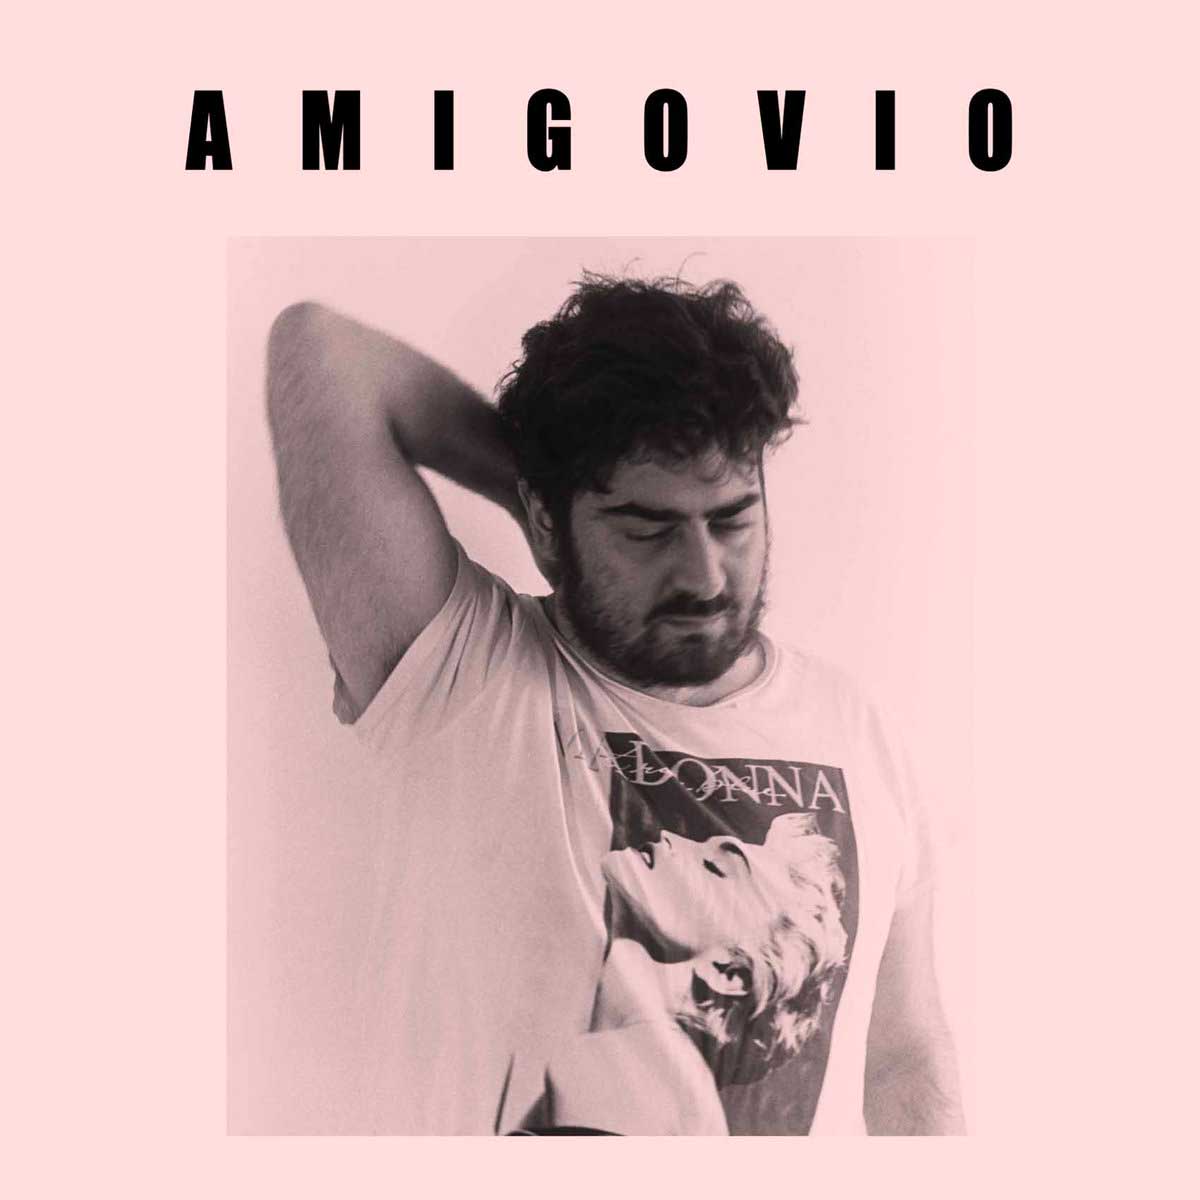 Tapa de Amigovio, disco de Amigovio